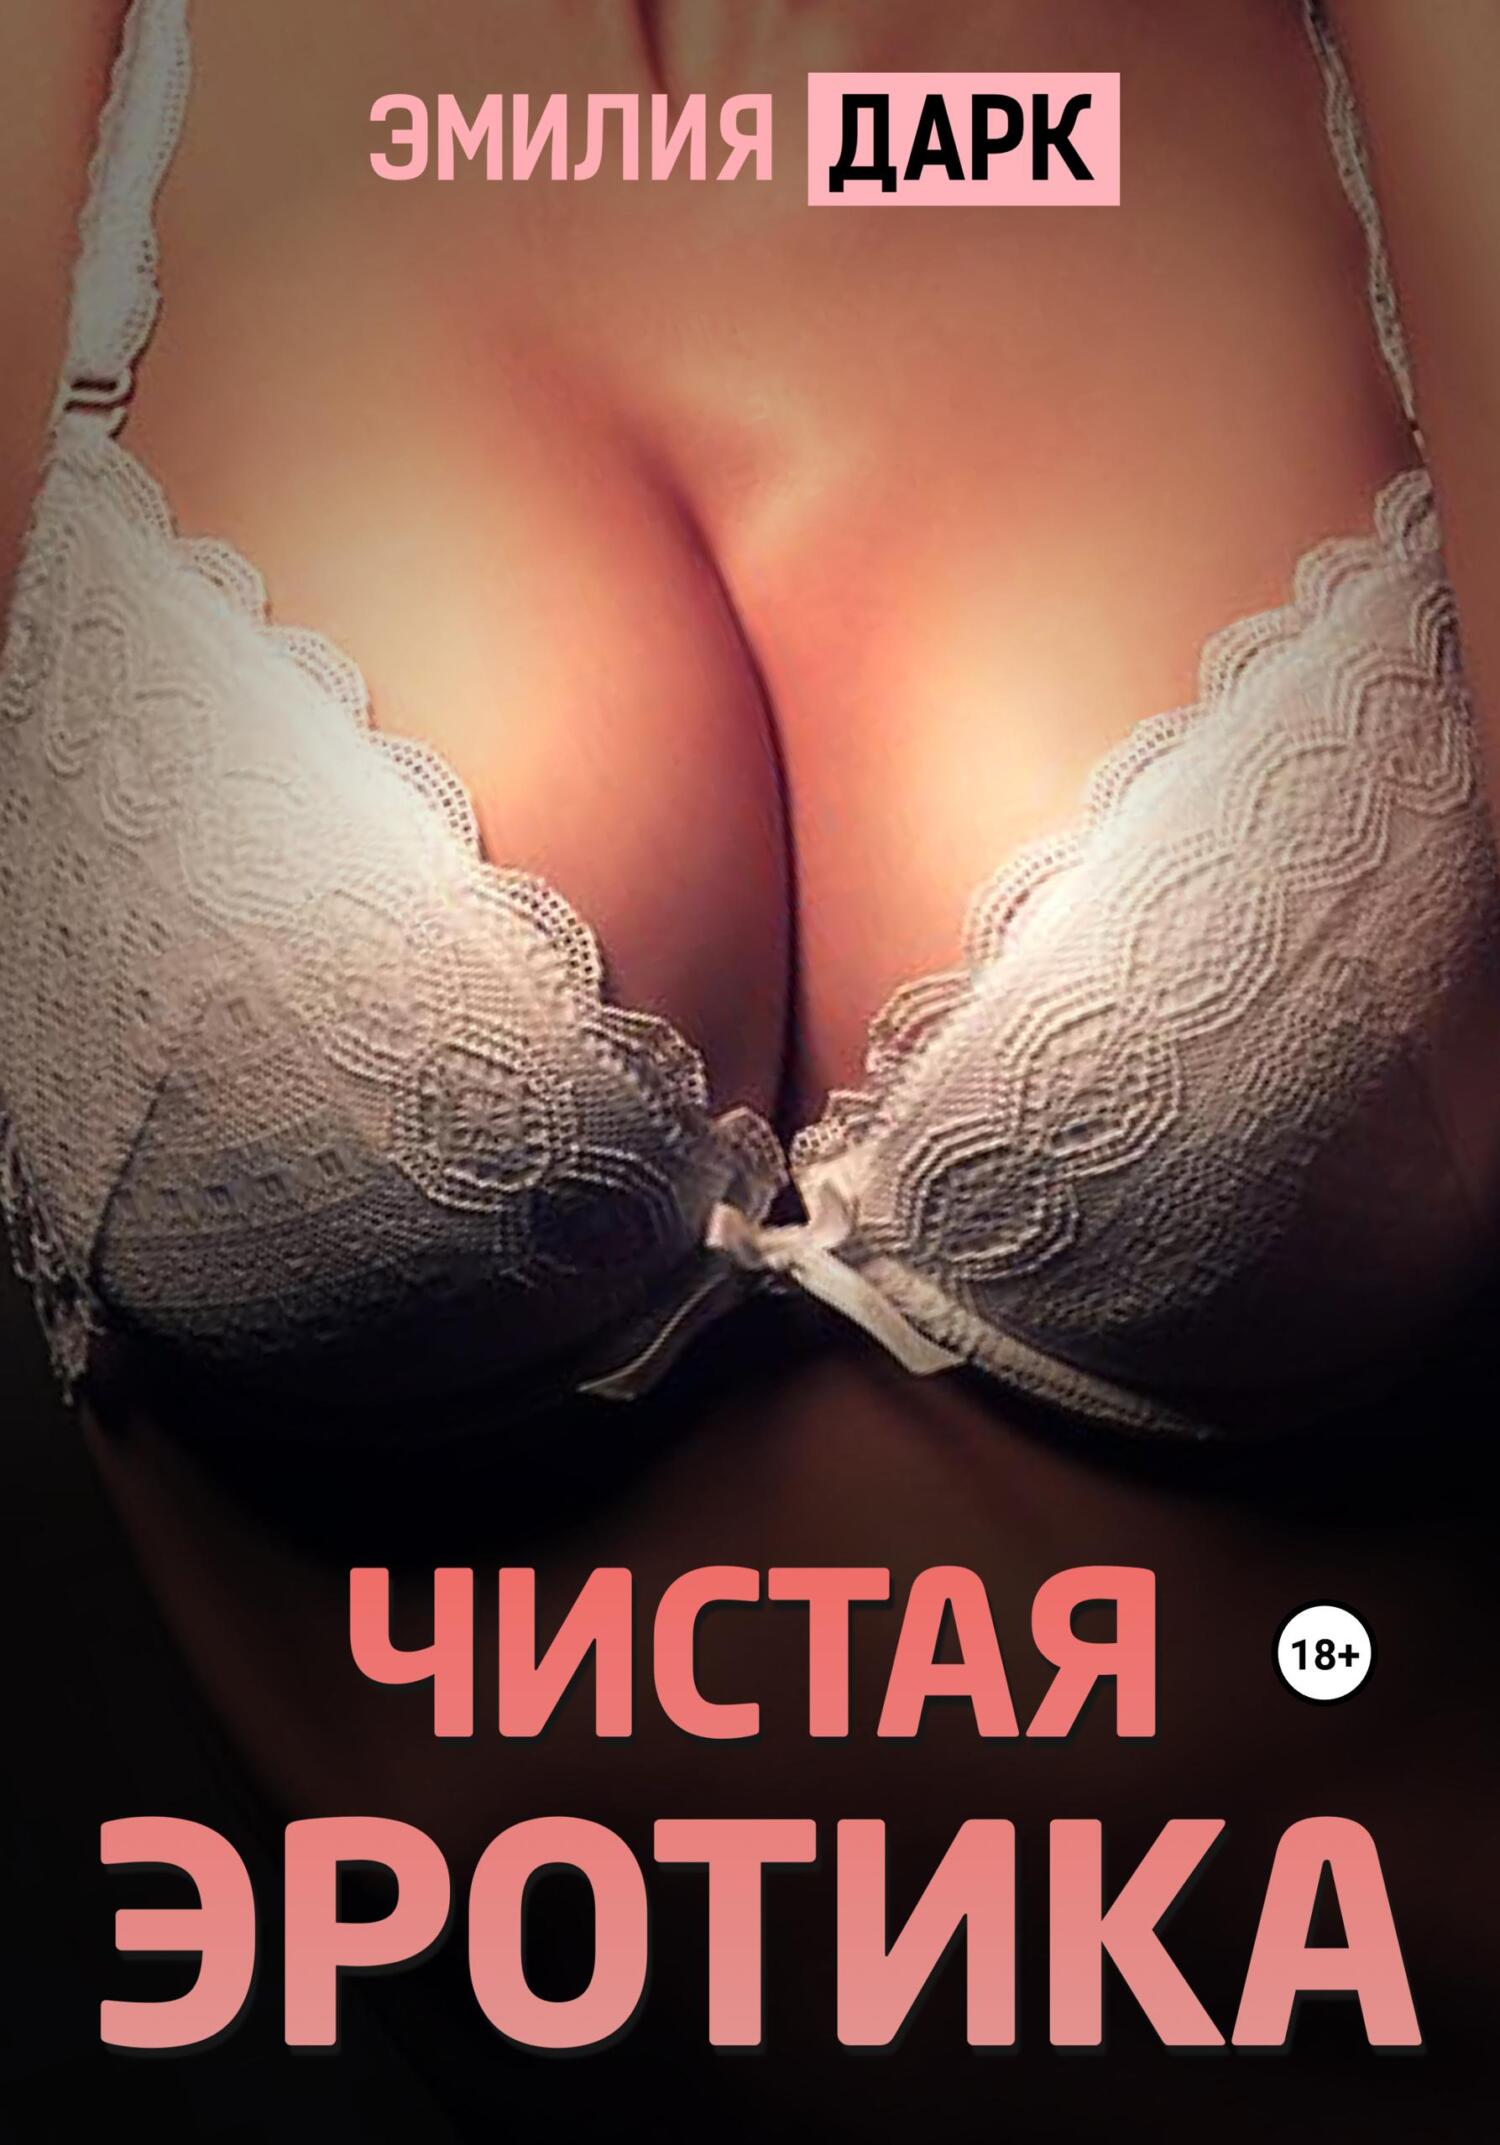 Лучшая женская эротика: порно видео на автонагаз55.рф